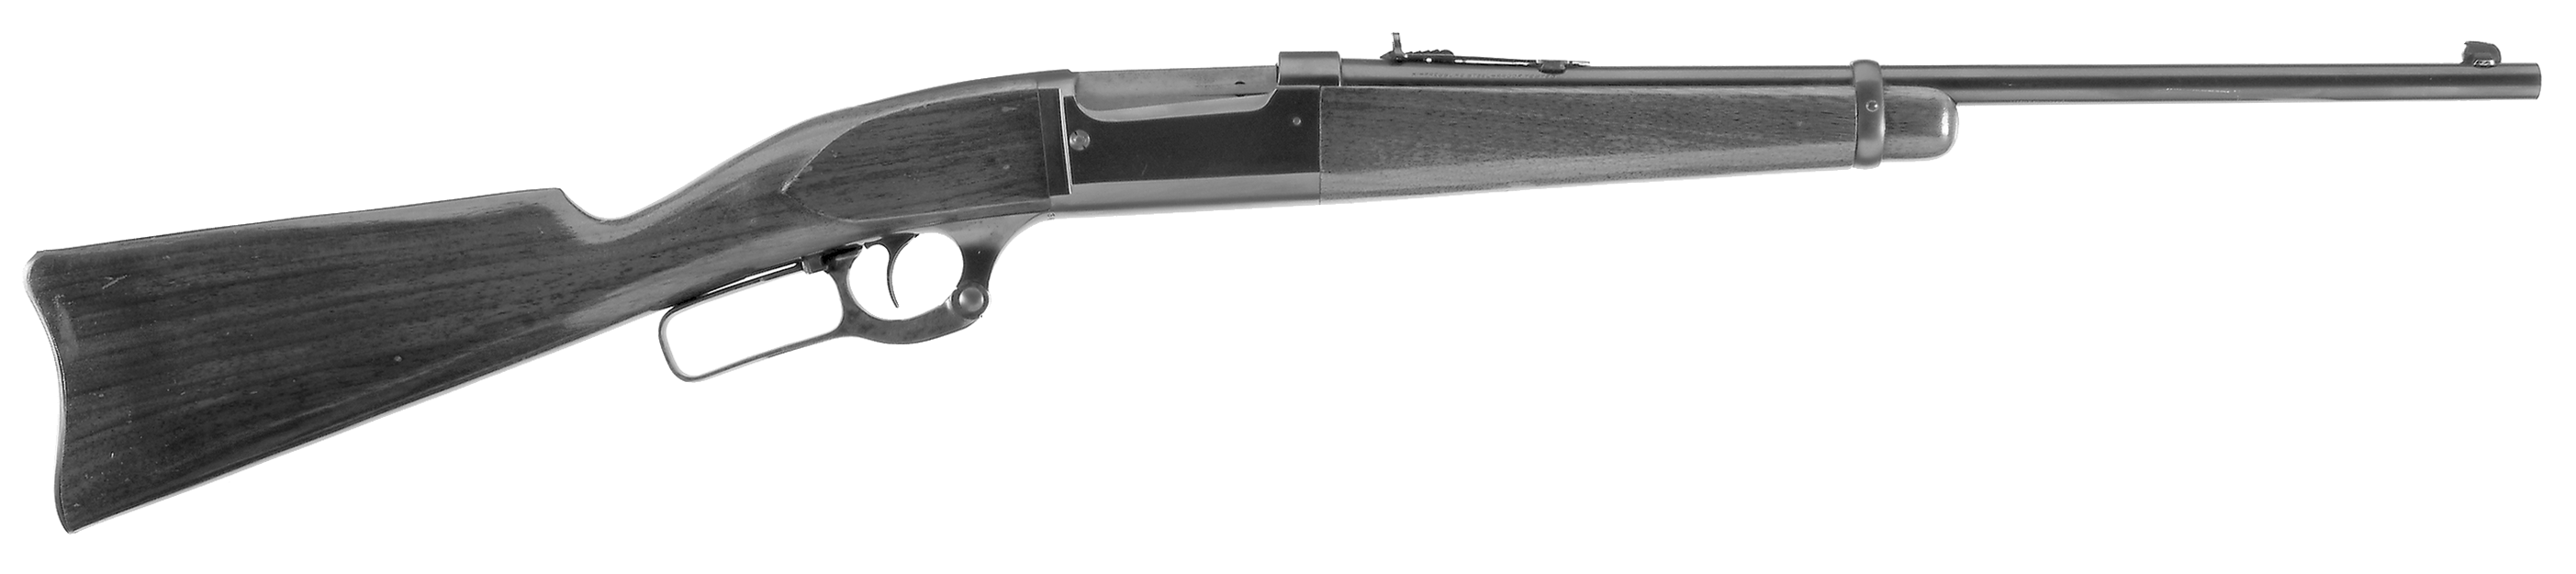 Model 99-H Carbine/Barrel Band Carbine